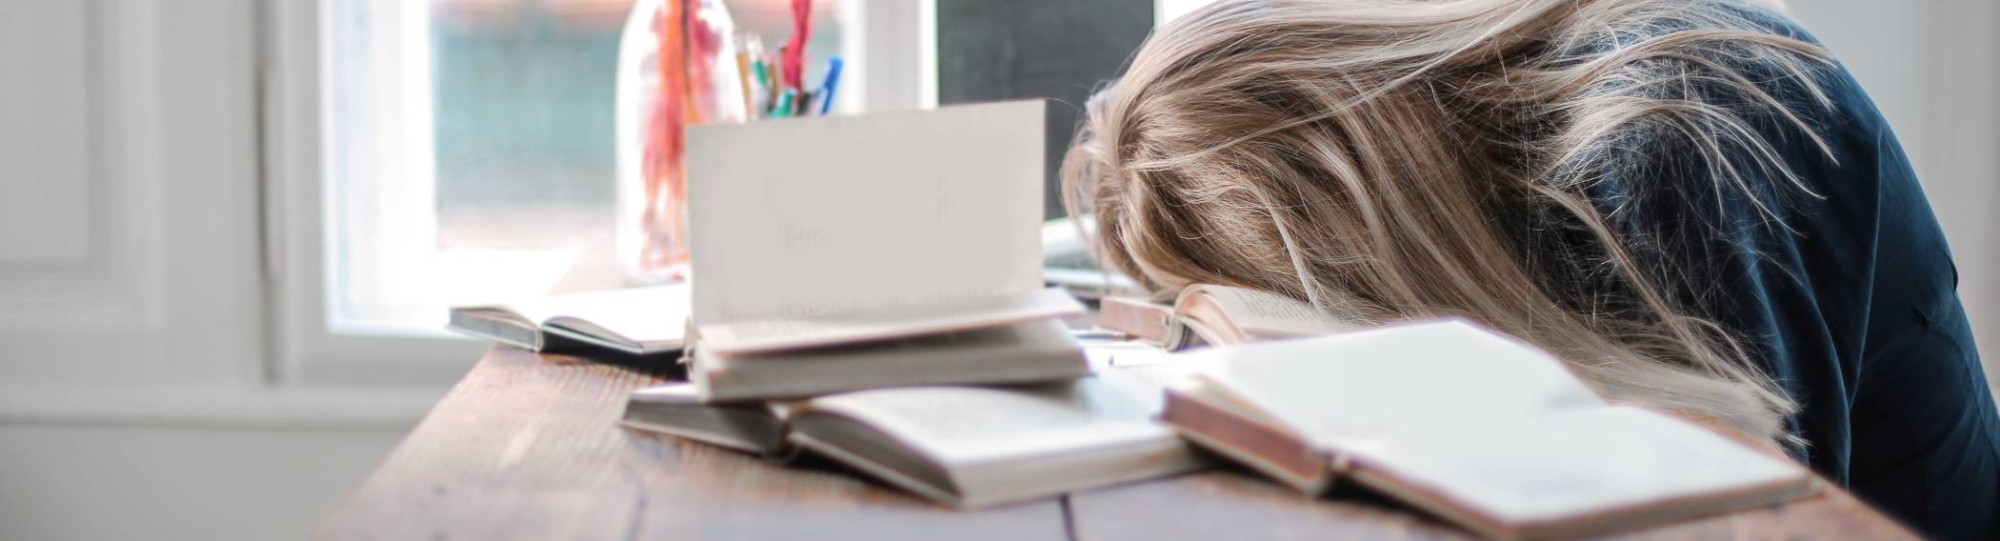 Meisje met lange blonde haren is in slaap gevallen bovenop haar huiswerk